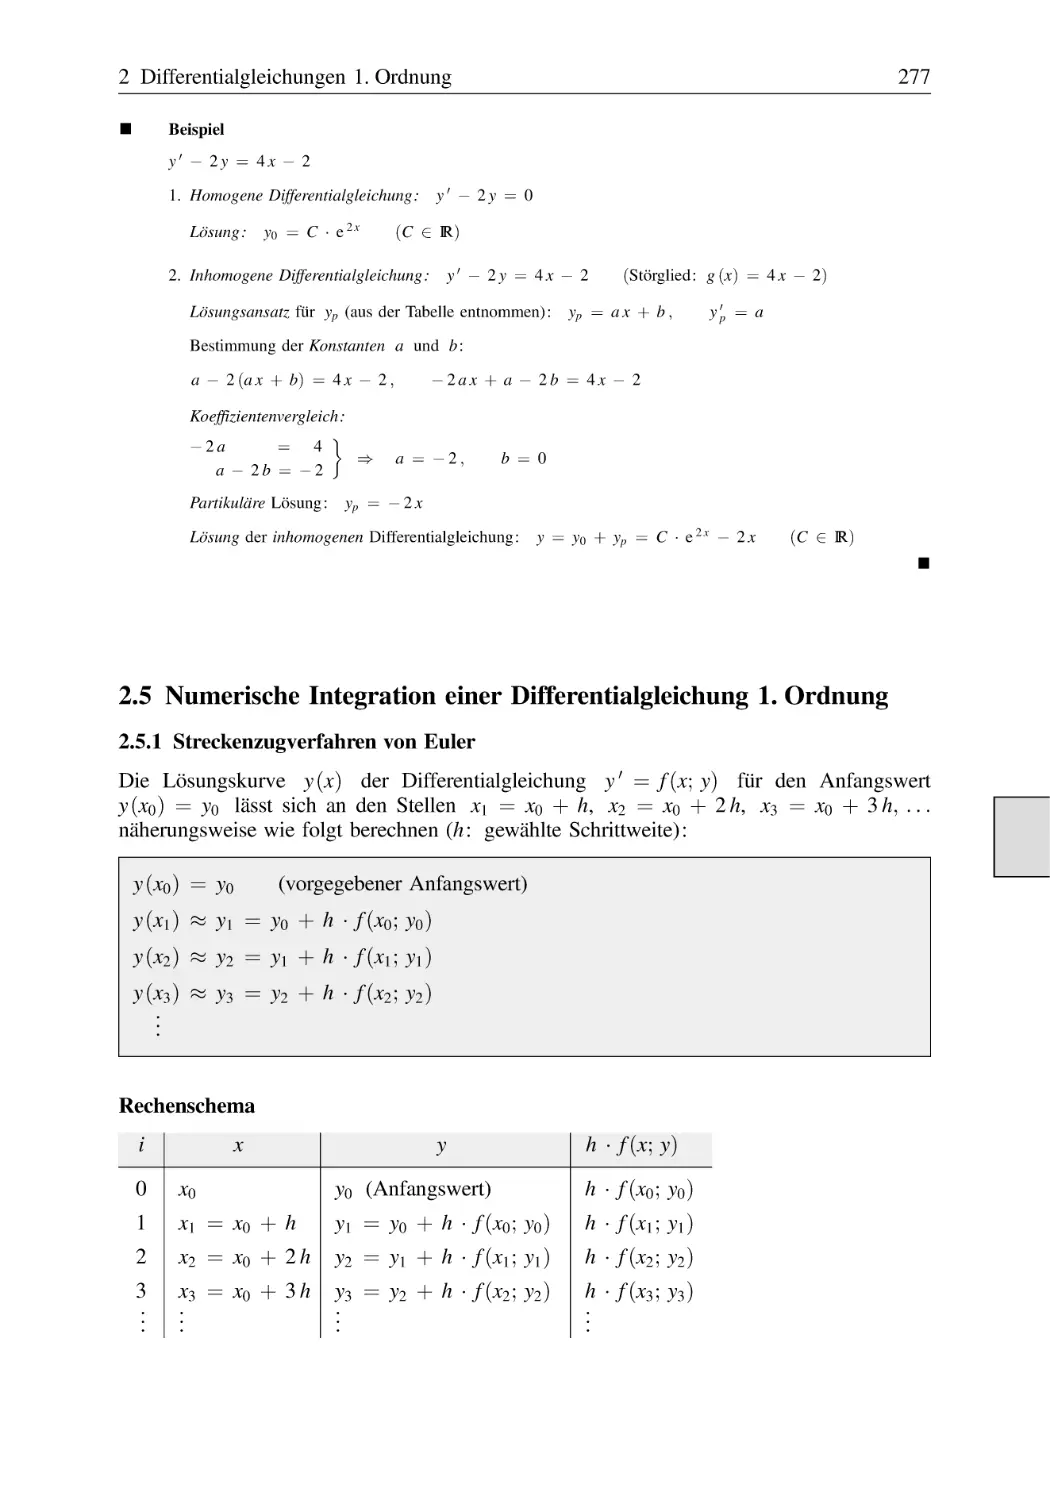 2.5 Numerische Integration einer Differentialgleichung 1. Ordnung
2.5.1 Streckenzugverfahren von Euler